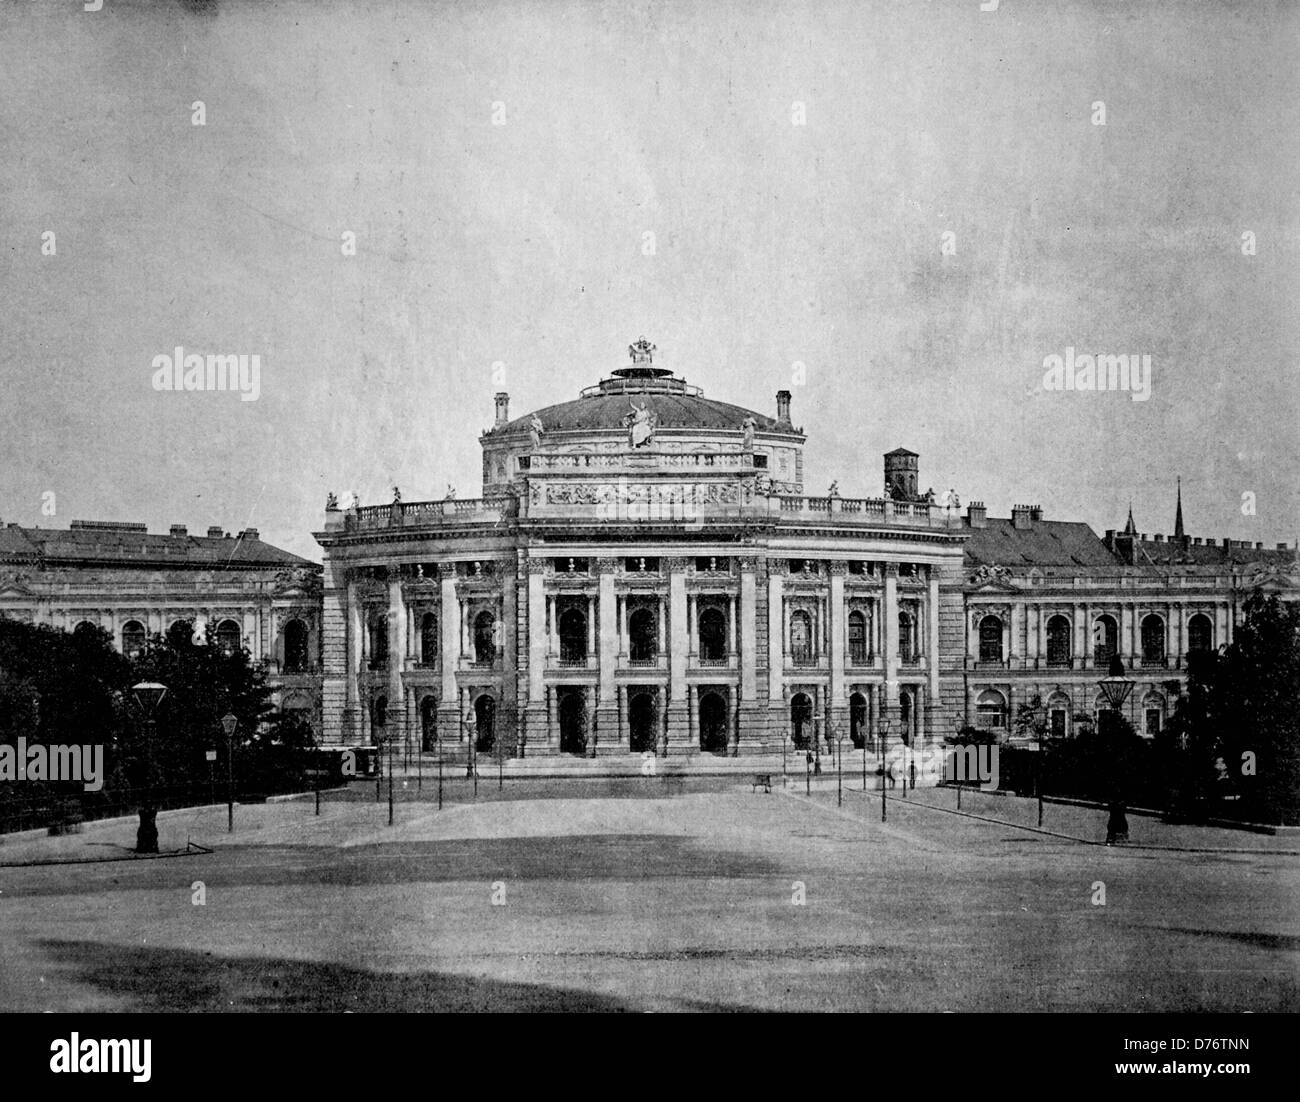 Au début de l'autotype palais impérial Hofburg à Vienne, Autriche, 1880 Banque D'Images